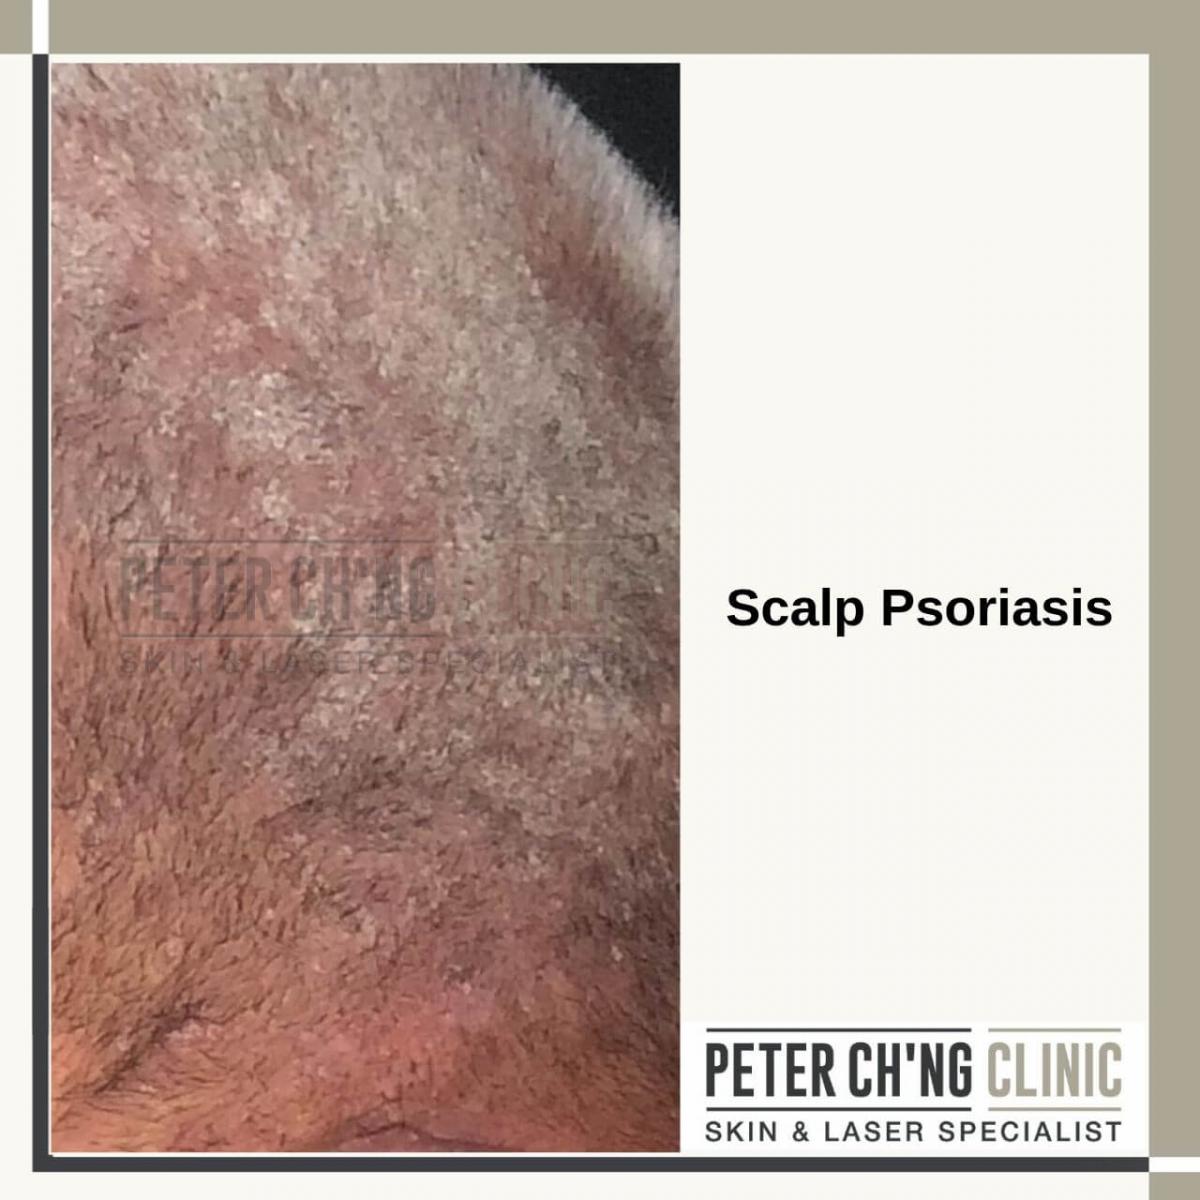 Scalp psoriasis